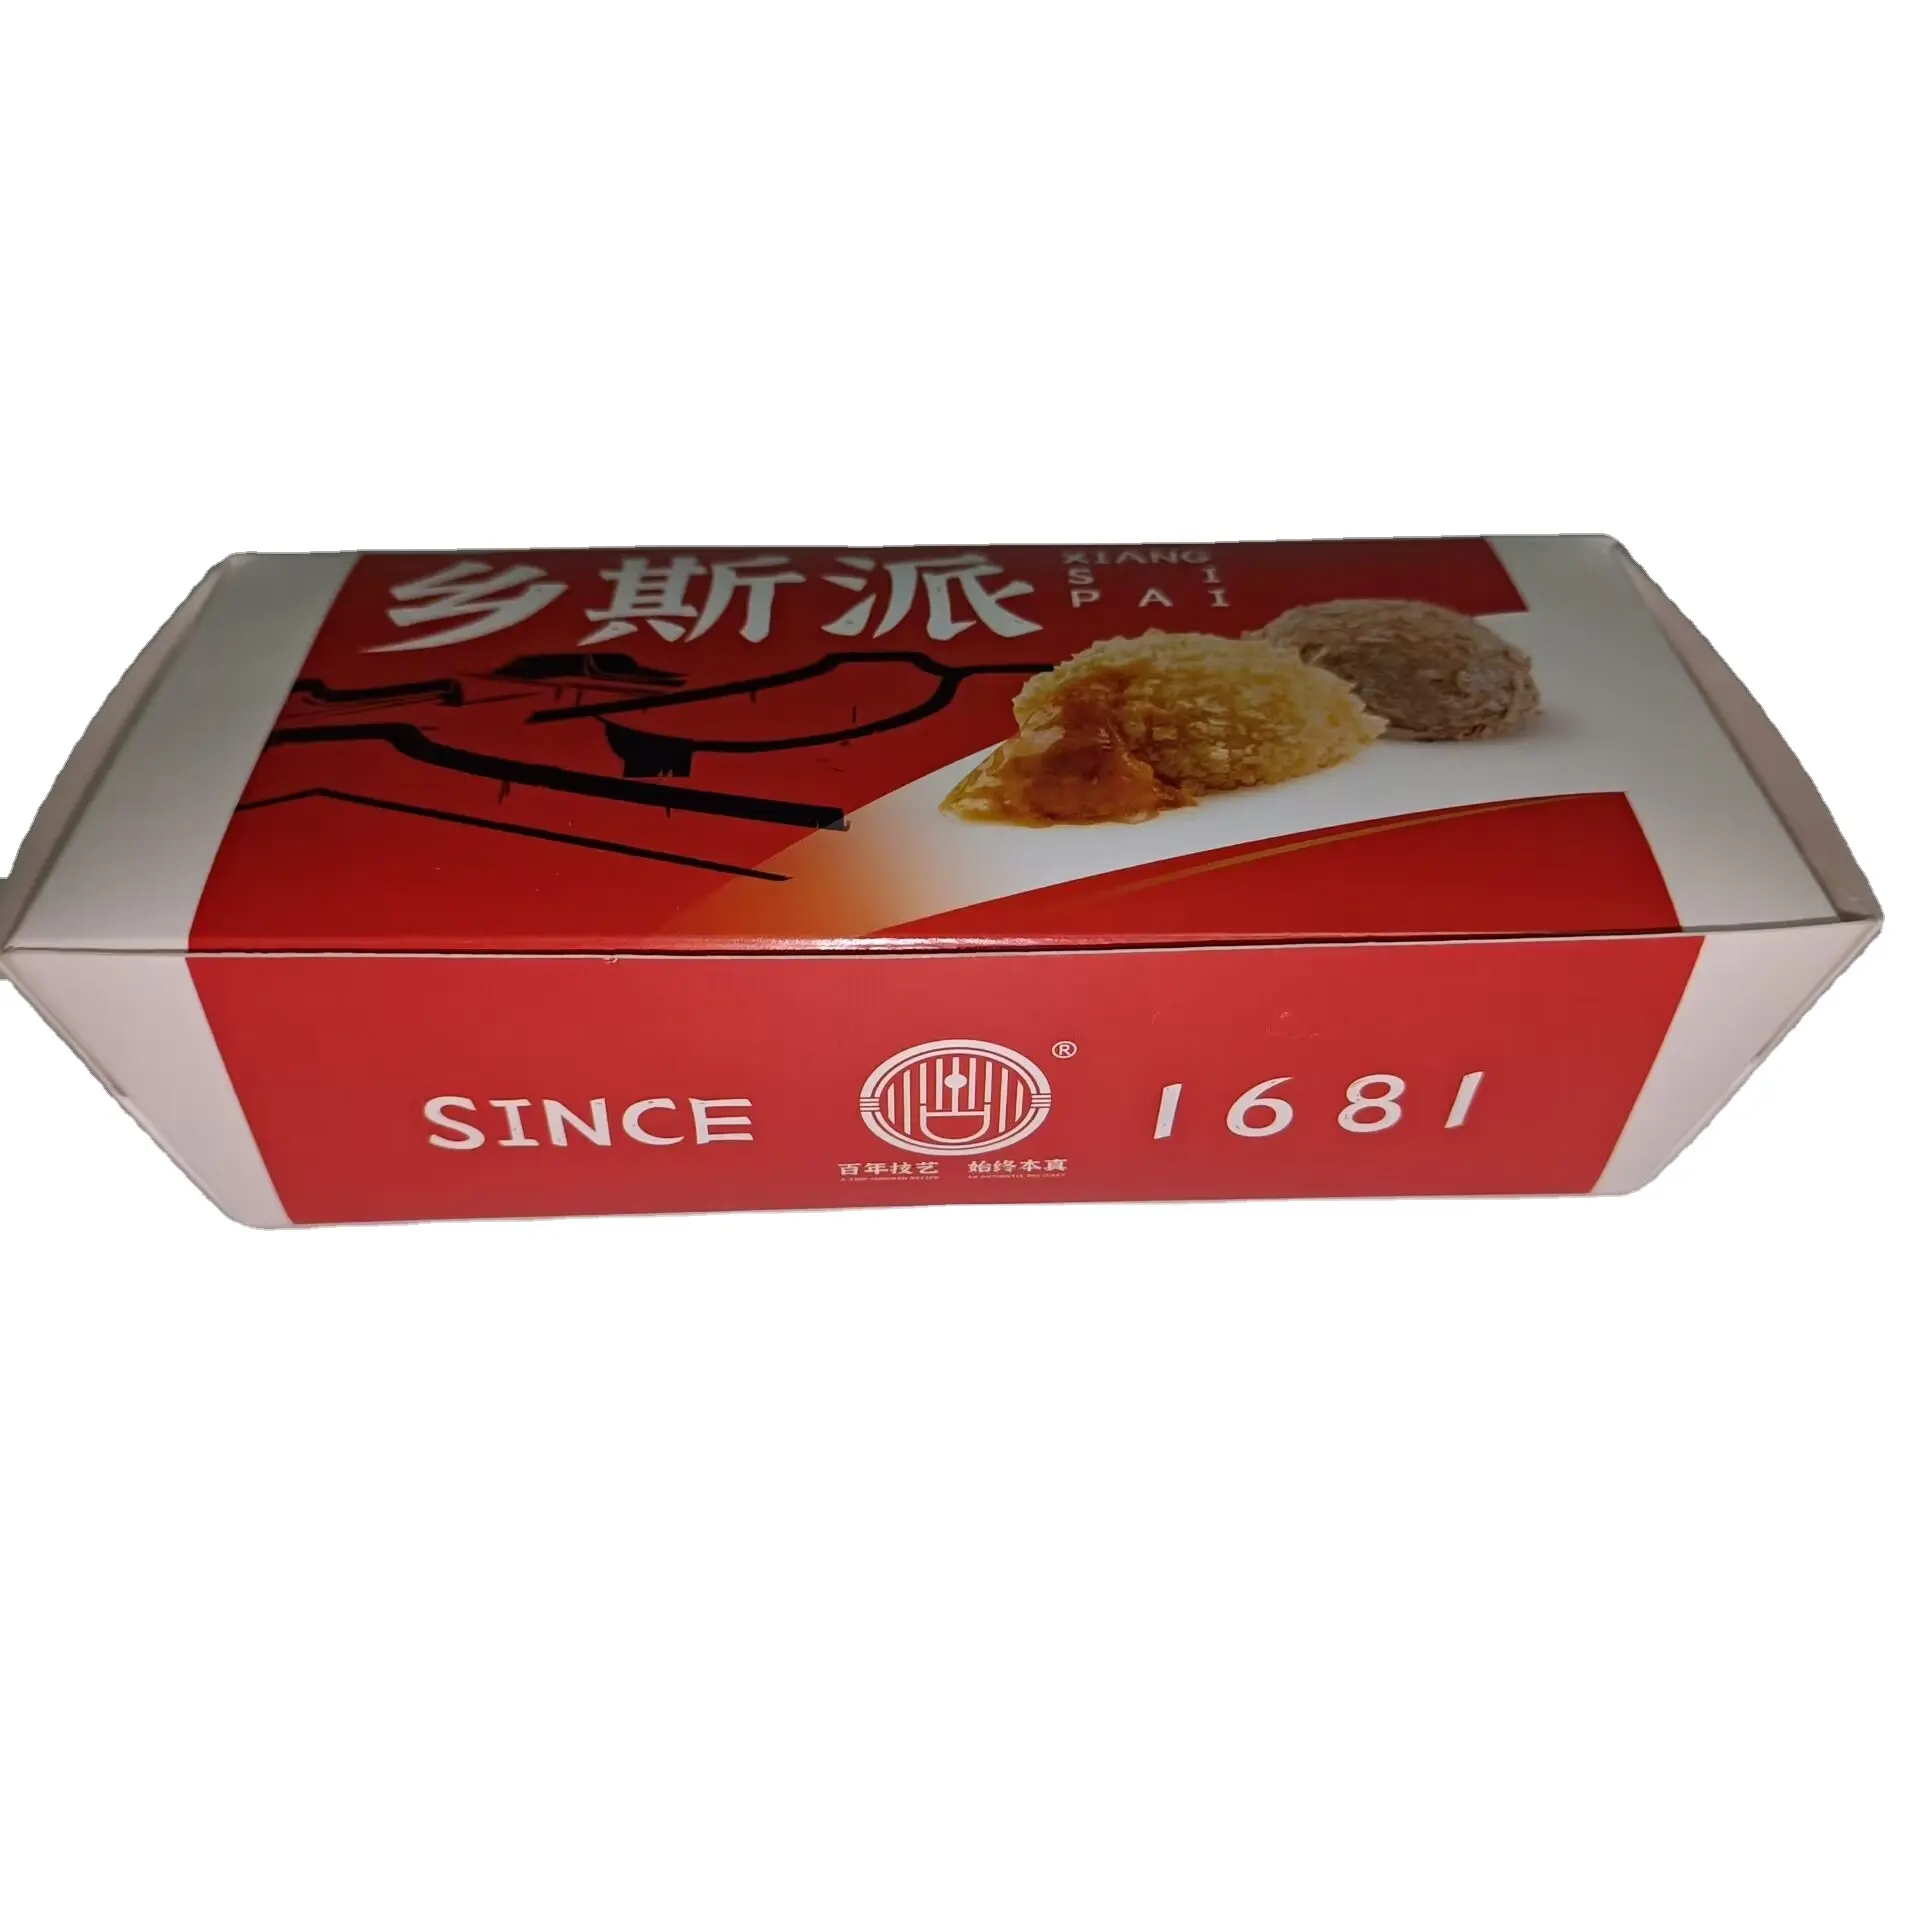 Caja de papel de pollo para palomitas de maíz personalizada SP2518, caja de papel para embalaje de alimentos para tartas de huevo, caja de papel para alas de pollo frito para tienda de comida rápida